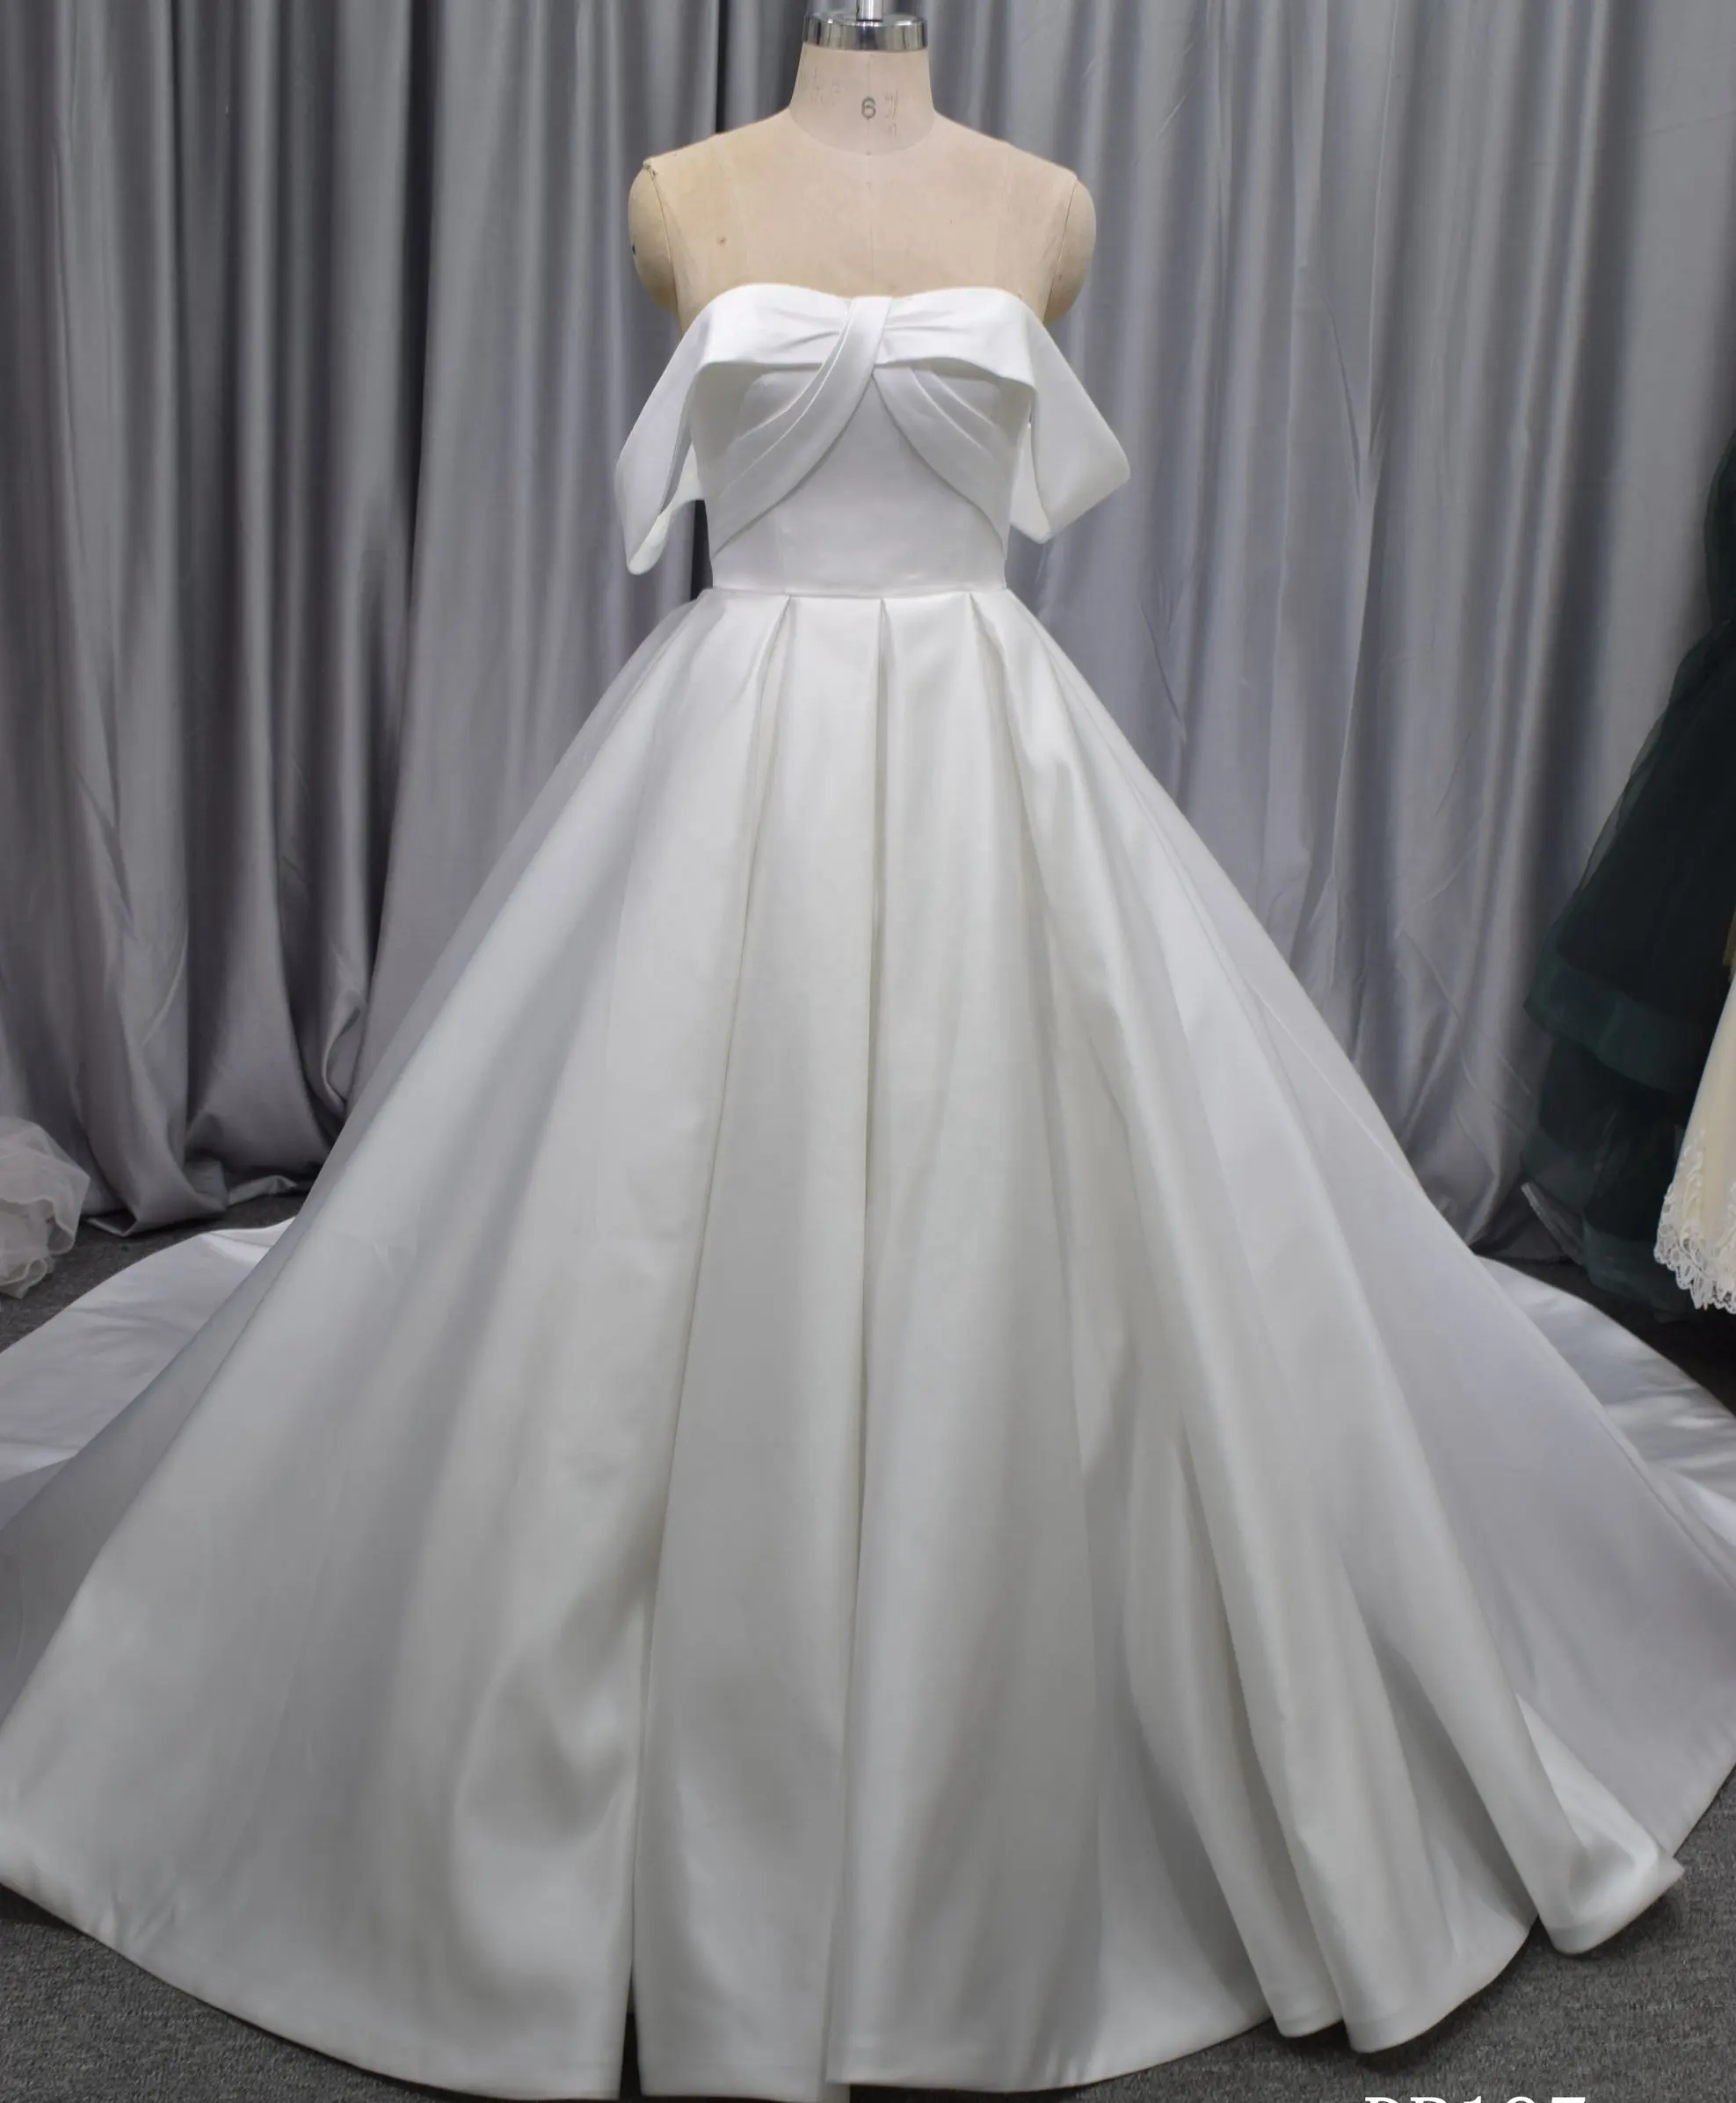 अनुकूलित किया जा सकता आइवरी सफेद आधुनिक भव्य बारी के लंबी स्कर्ट महिला शादी की पोशाक